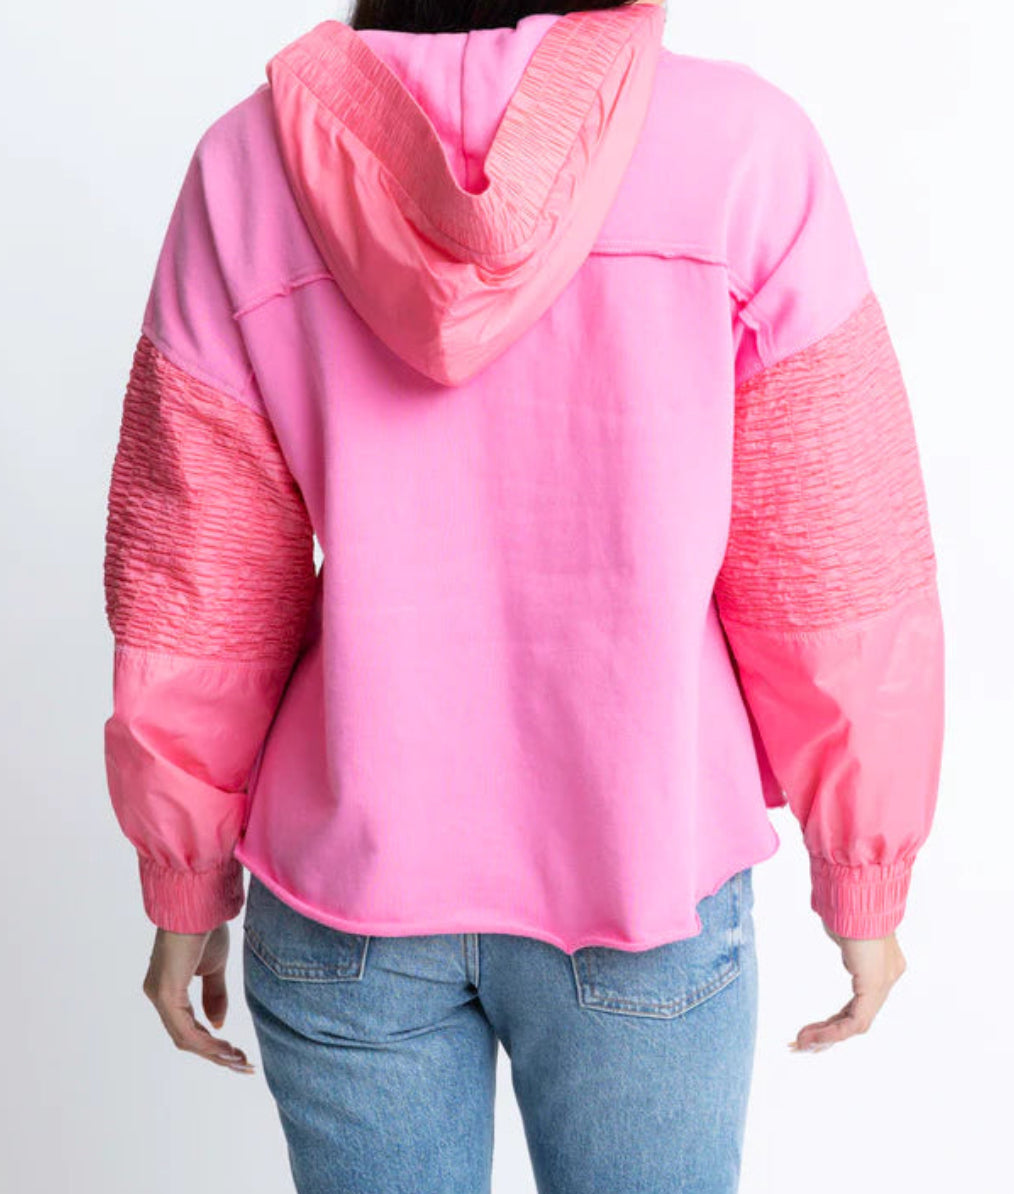 Solid Vneck Knit Novelty Sweatshirt by Karlie